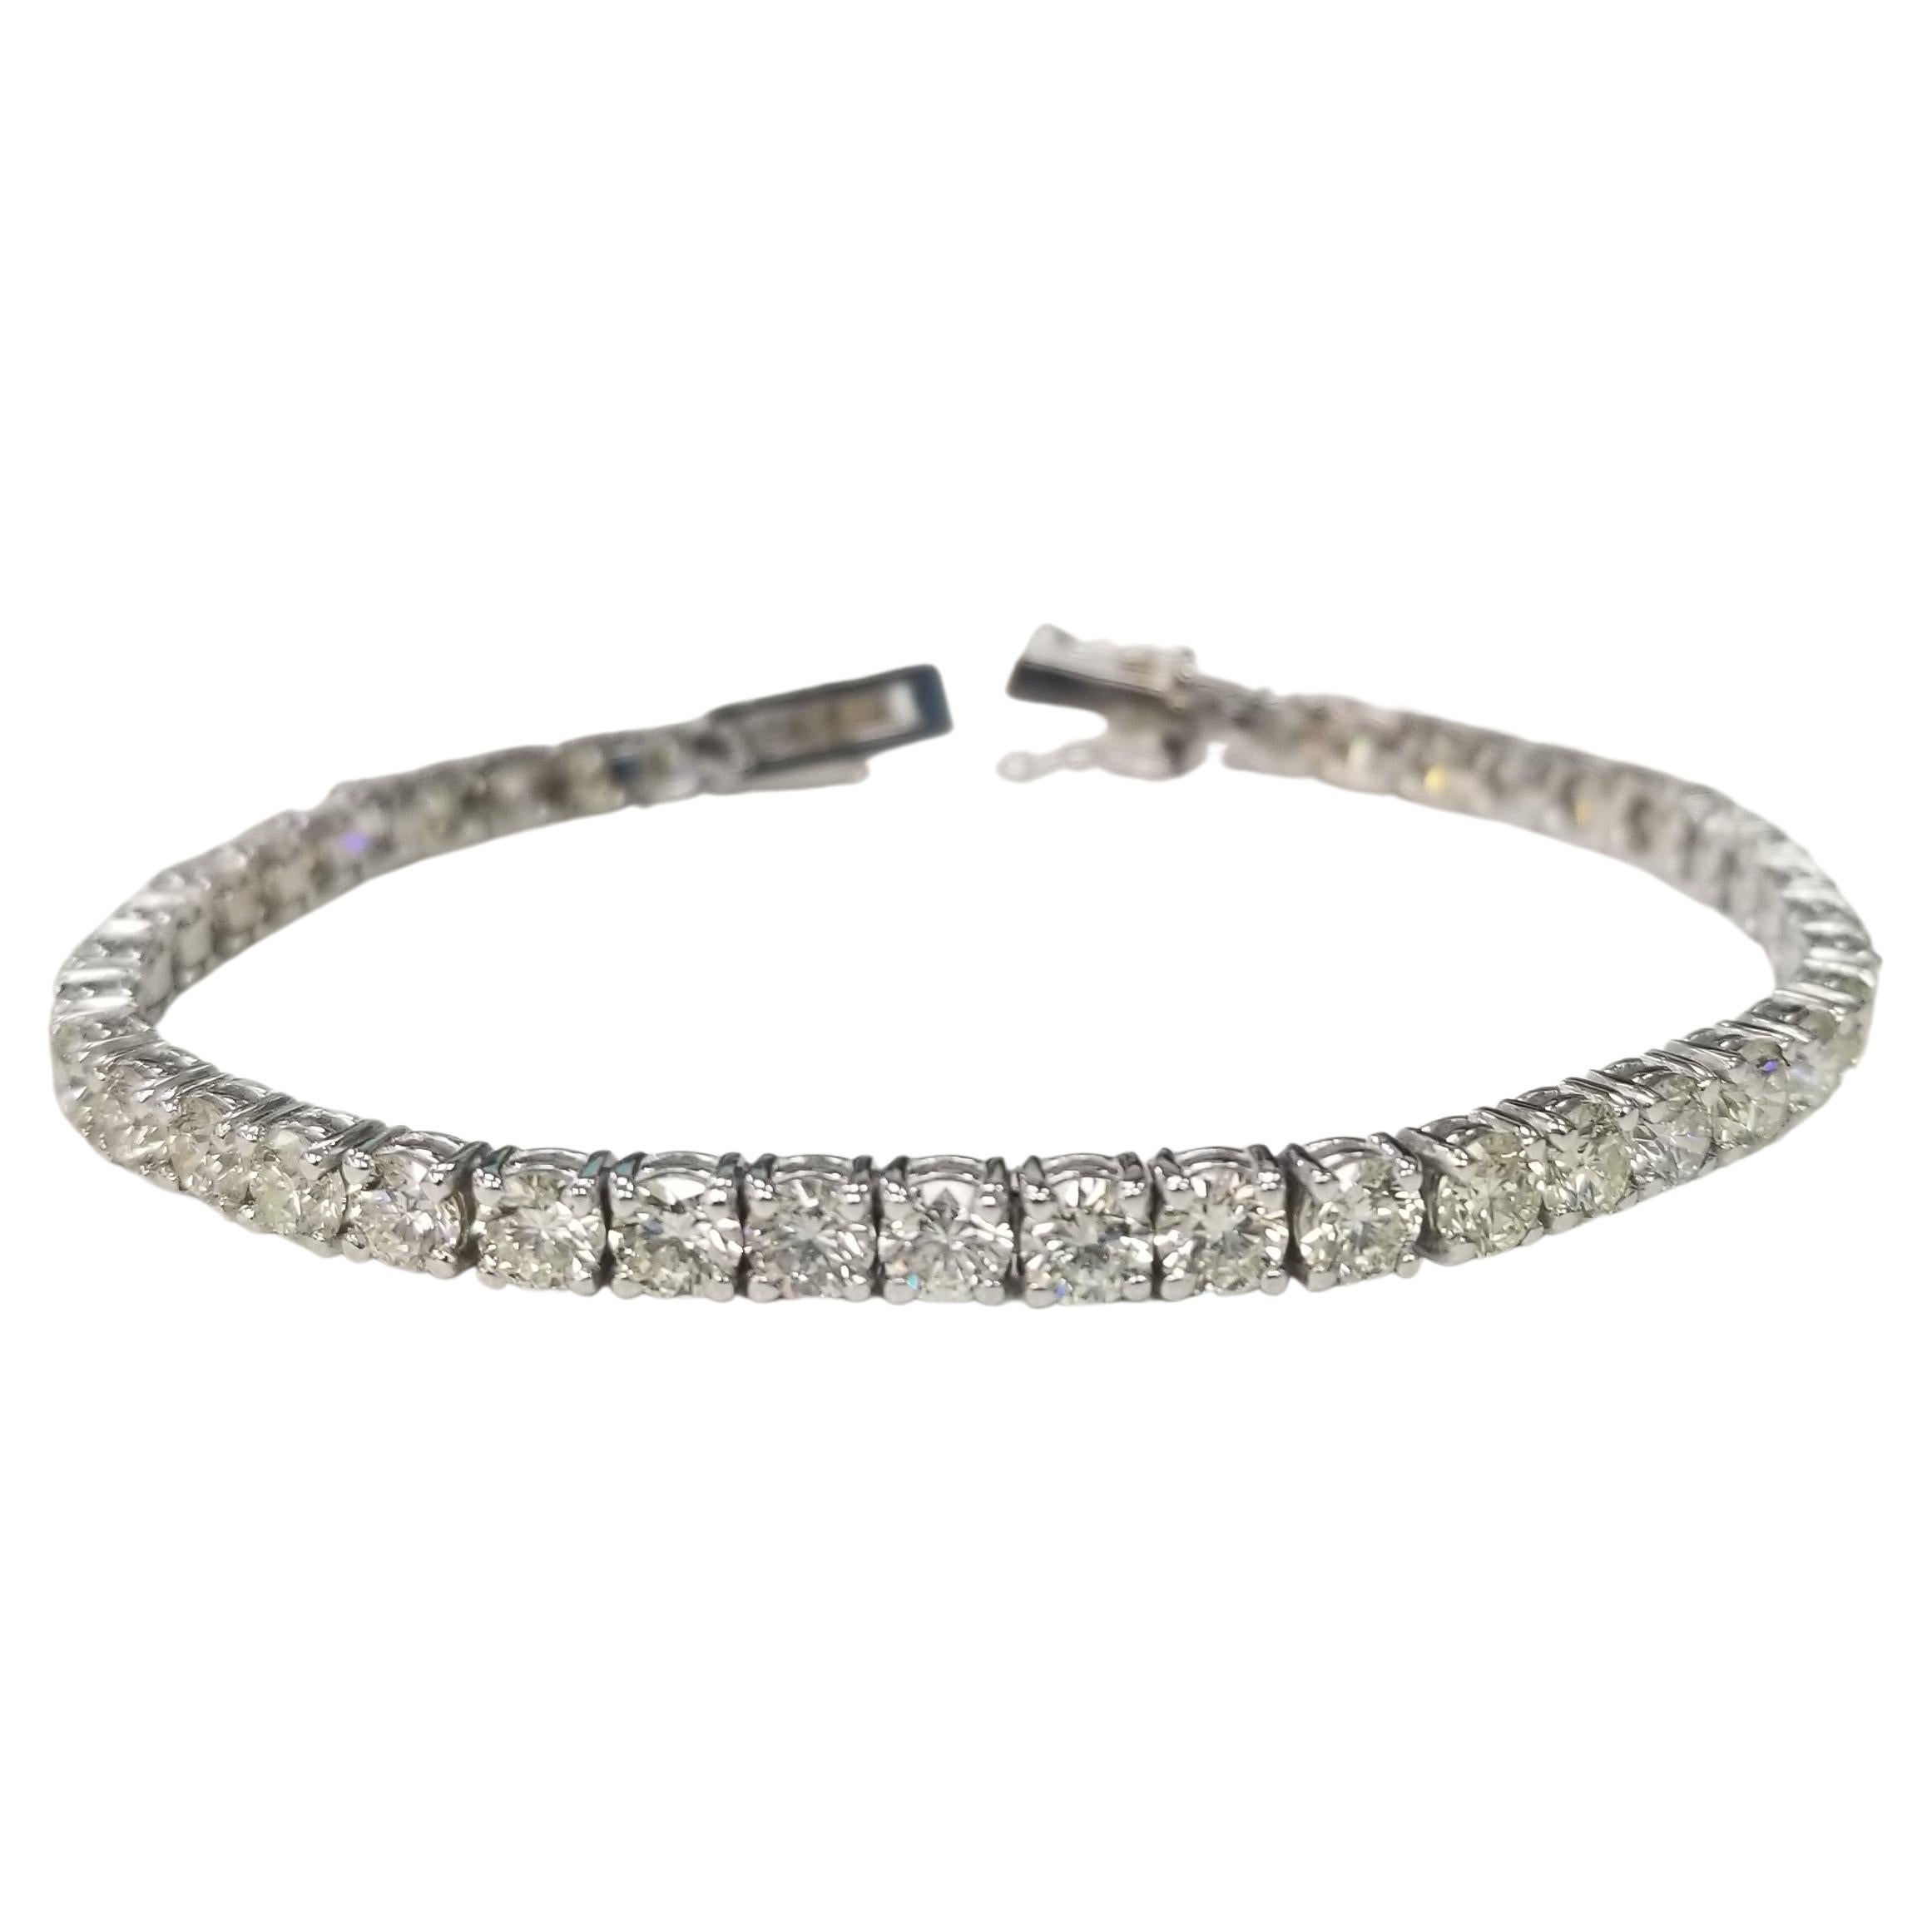 Bracelet tennis en diamants de 9,51 carats sertis dans une monture en or blanc 14 carats